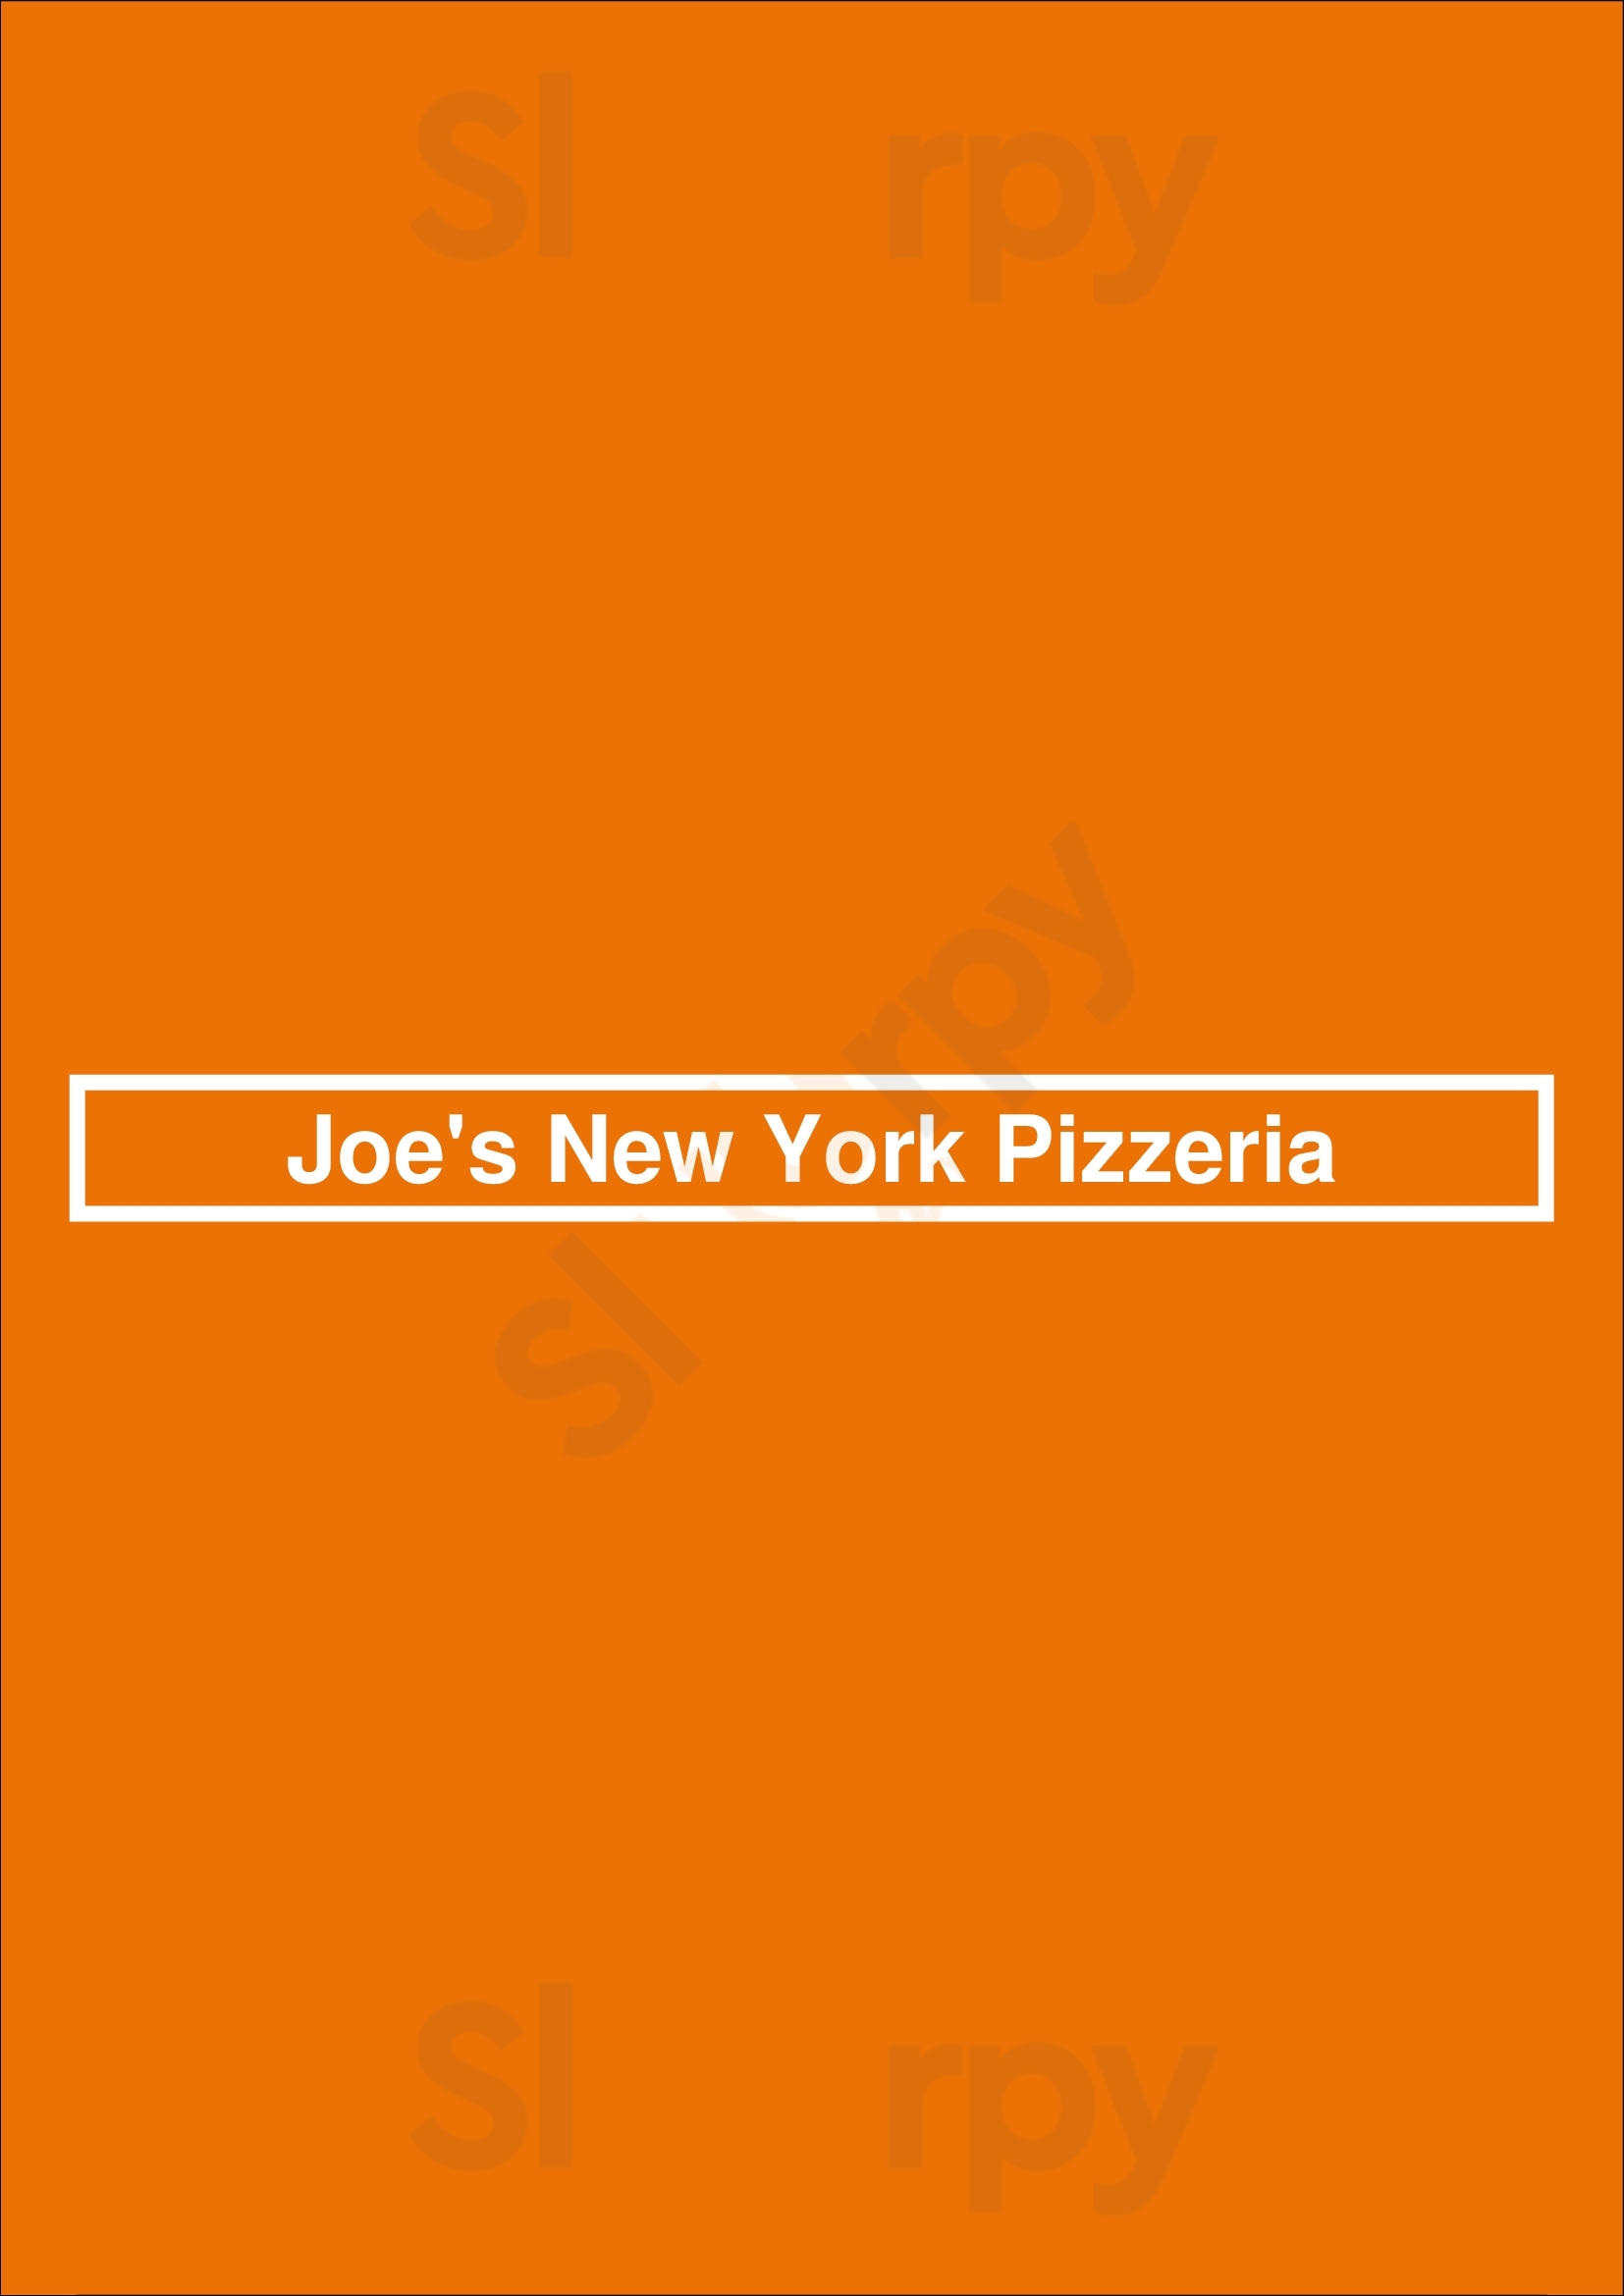 Joe's New York Pizzeria Alpharetta Menu - 1